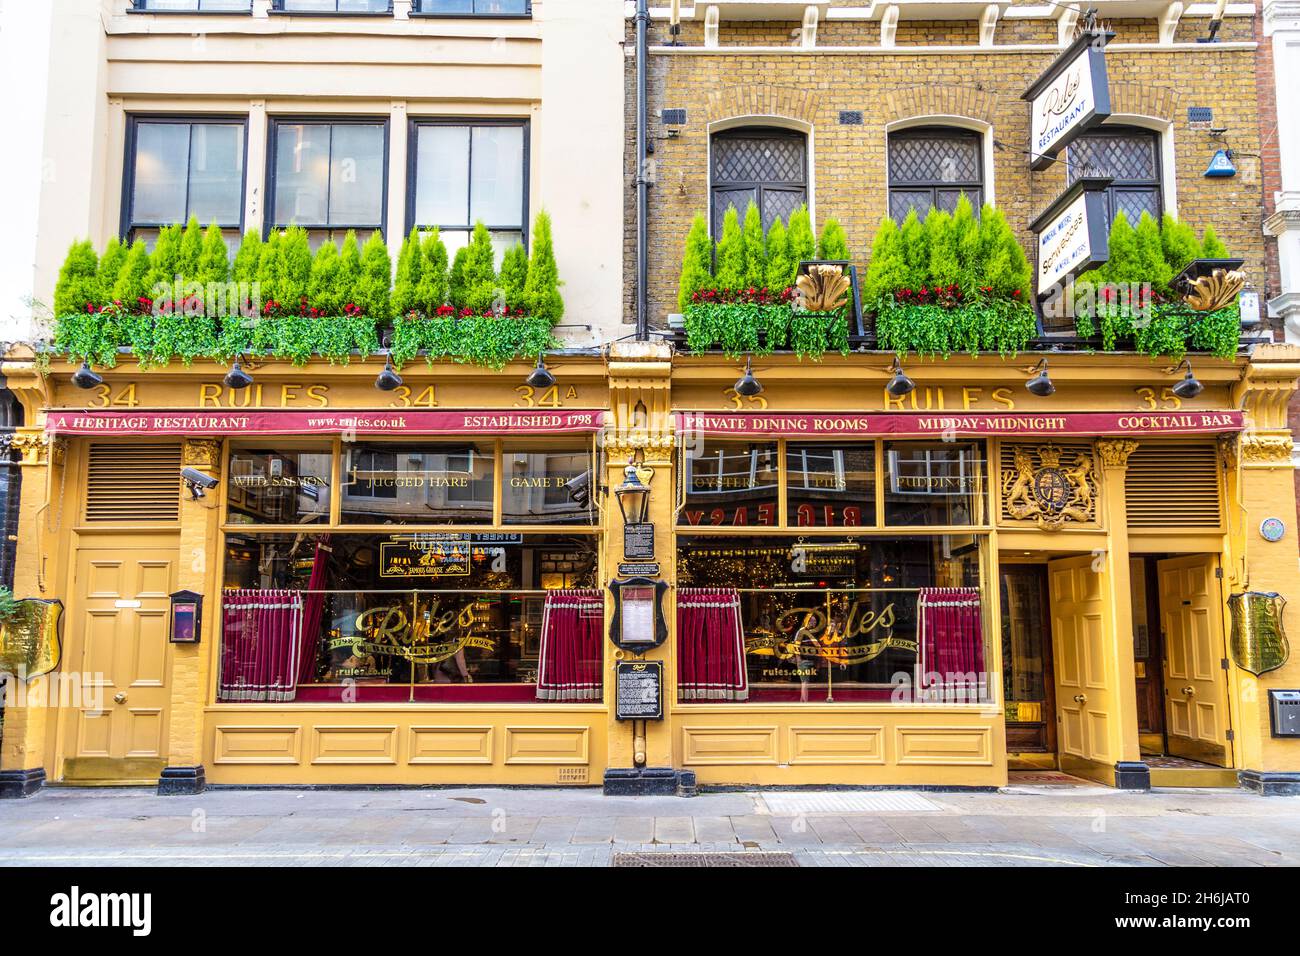 Außenansicht des Rules Restaurants bekannt als Londons ältestes Restaurant, Maiden Lane, London, Großbritannien Stockfoto